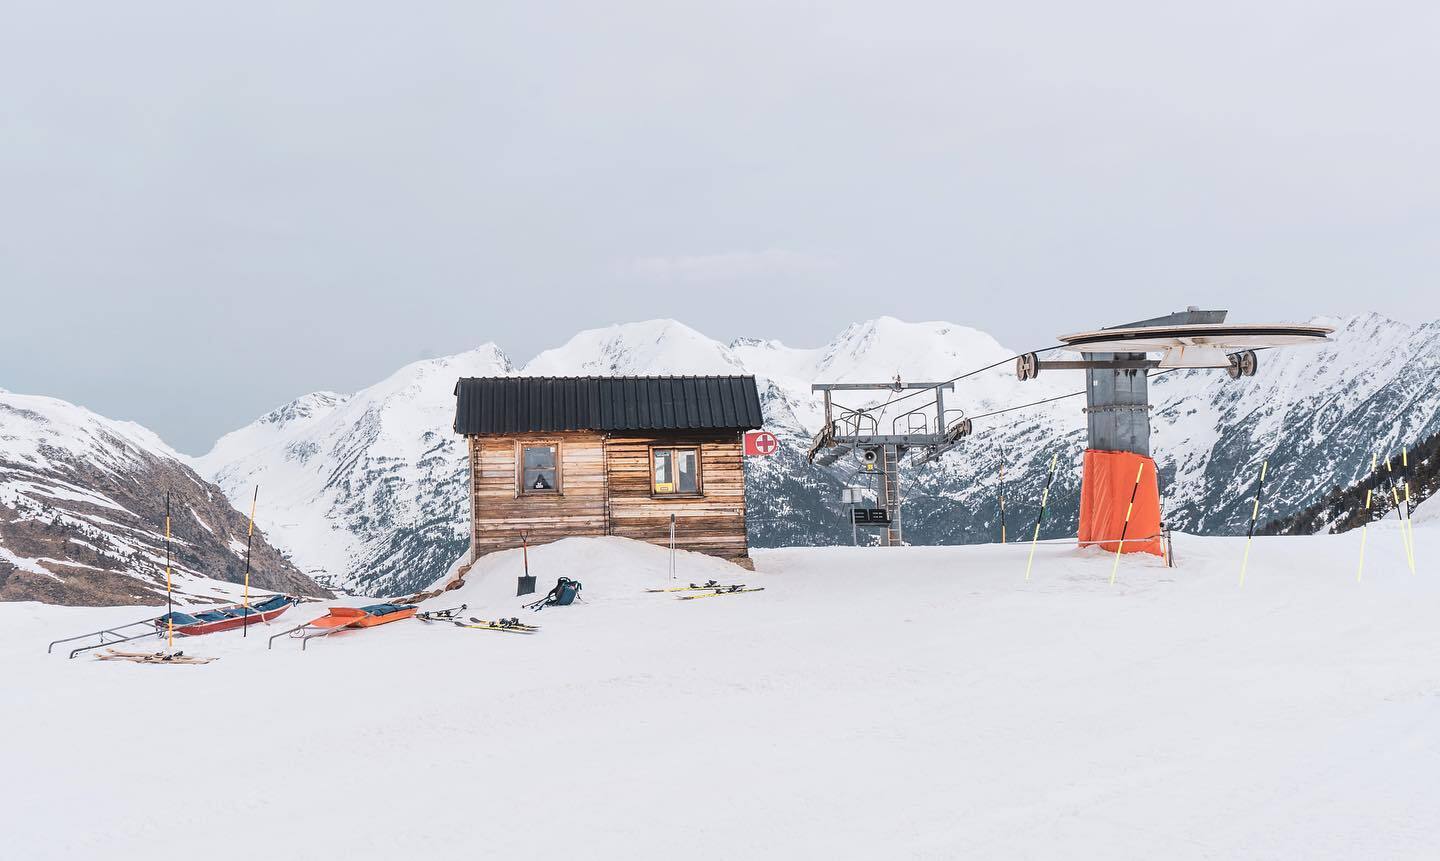 El Pirineo de Lleida está registrando una muy buena temporada de esquí en números